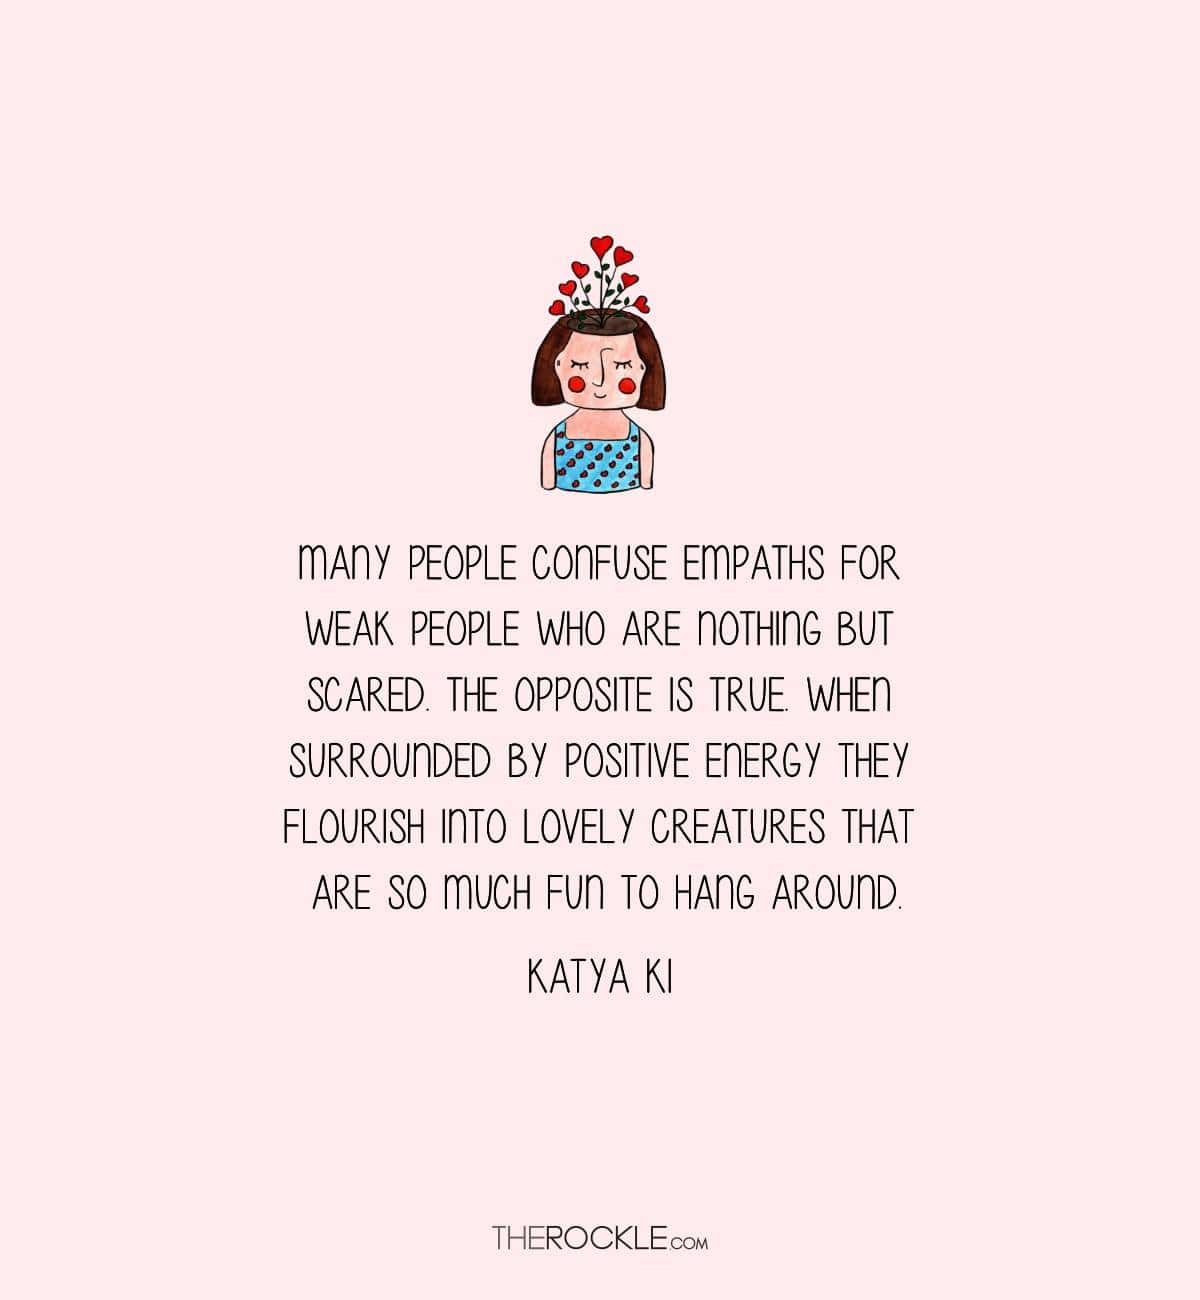 Katya Ki on what empaths are like